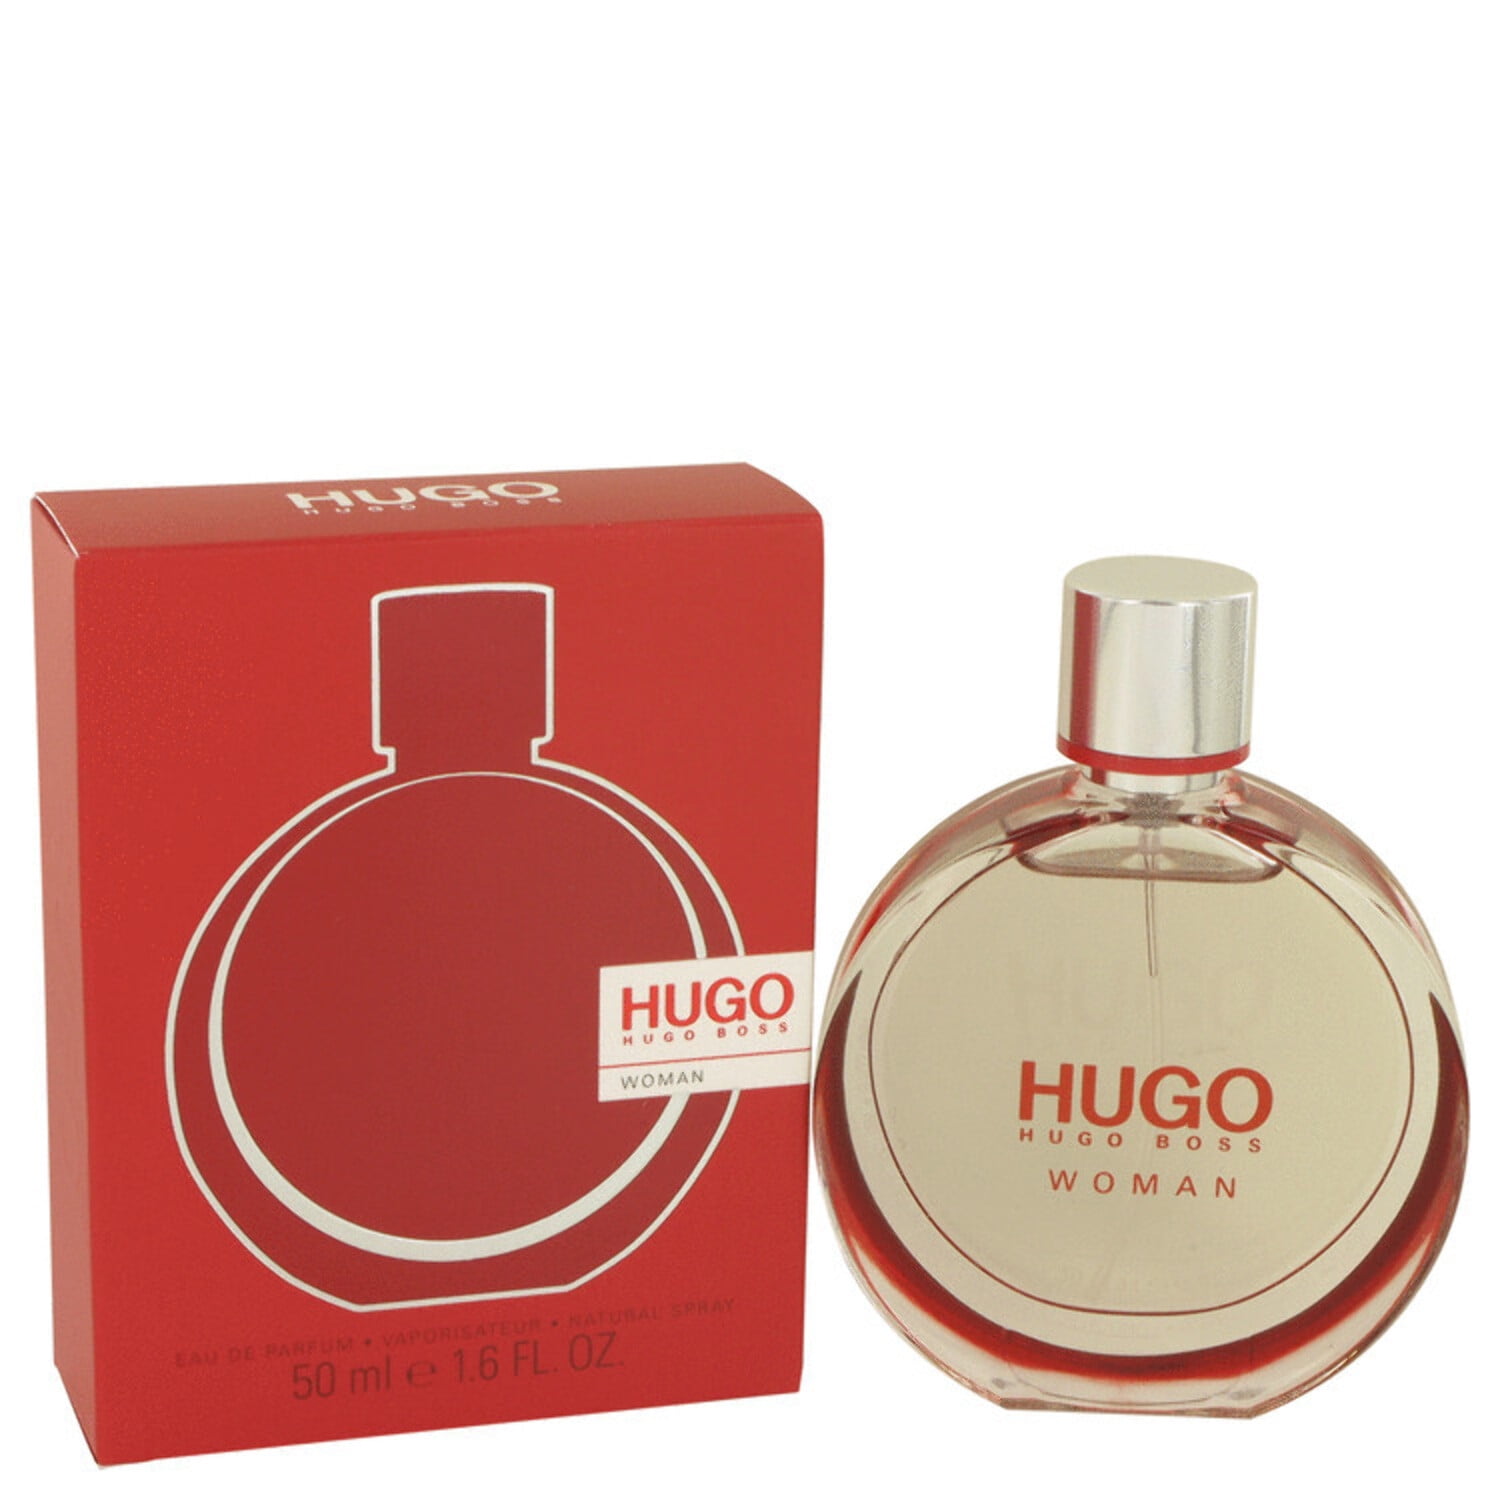 HUGO BOSS Hugo Woman Extreme Eau de Parfum, Perfume for Women, 1.6 Oz 